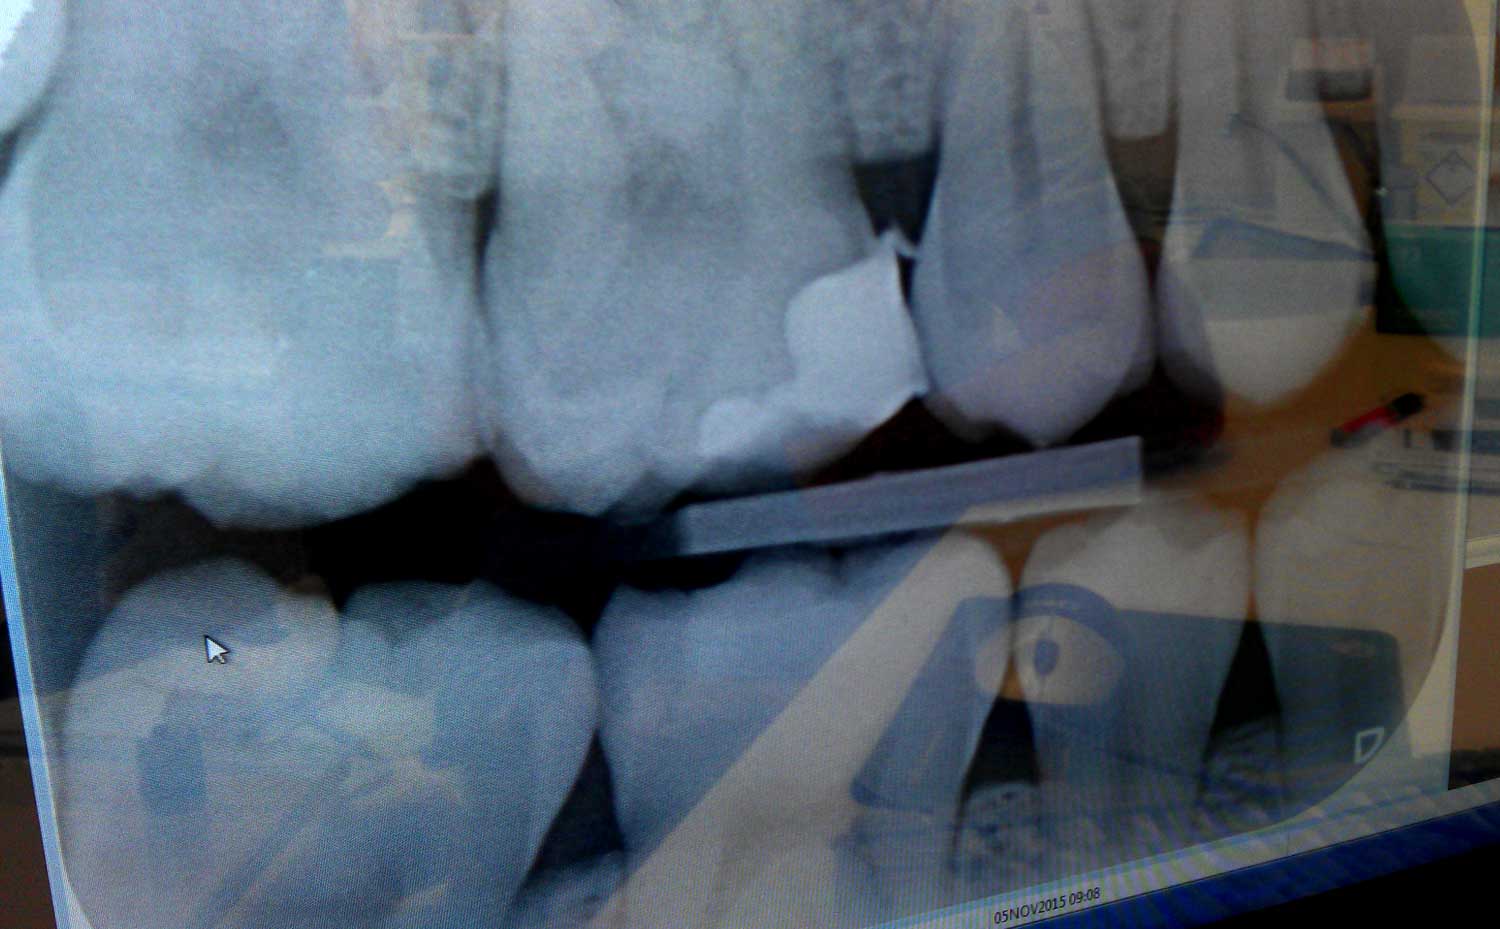 röntgenfoto-kiezen-gebit